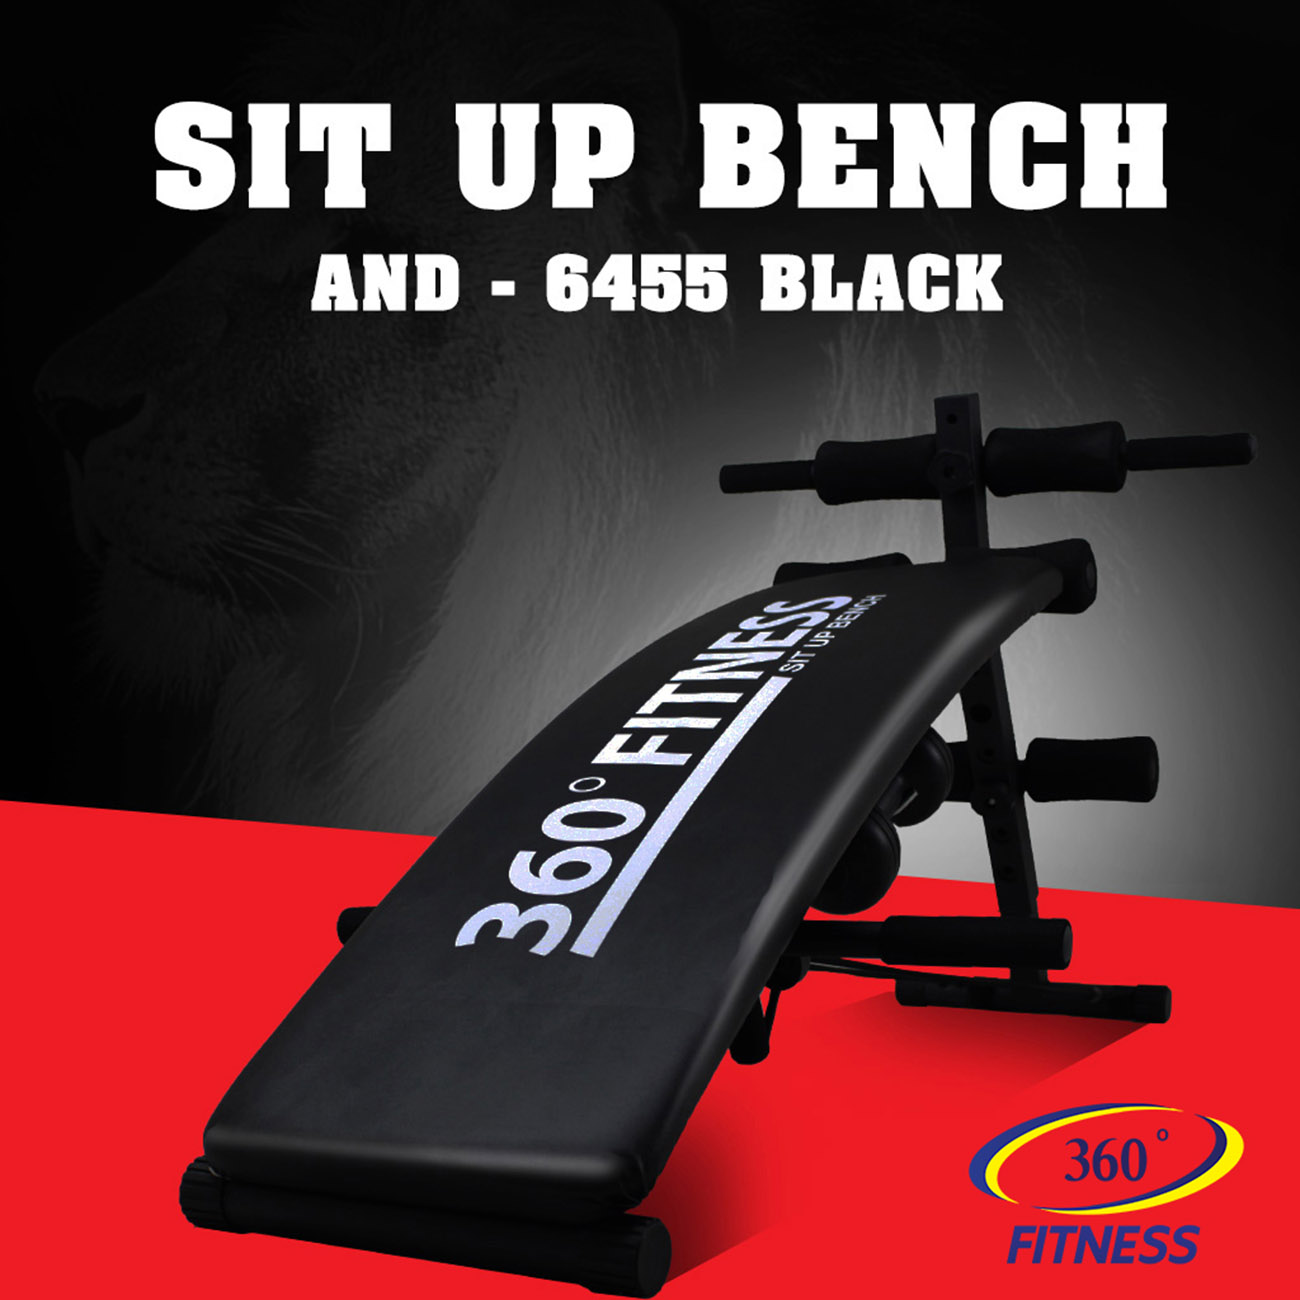 เบาะนั่งซิทอัพ Fitness Sit Up Bench รุ่น AND-6455 สีดำ